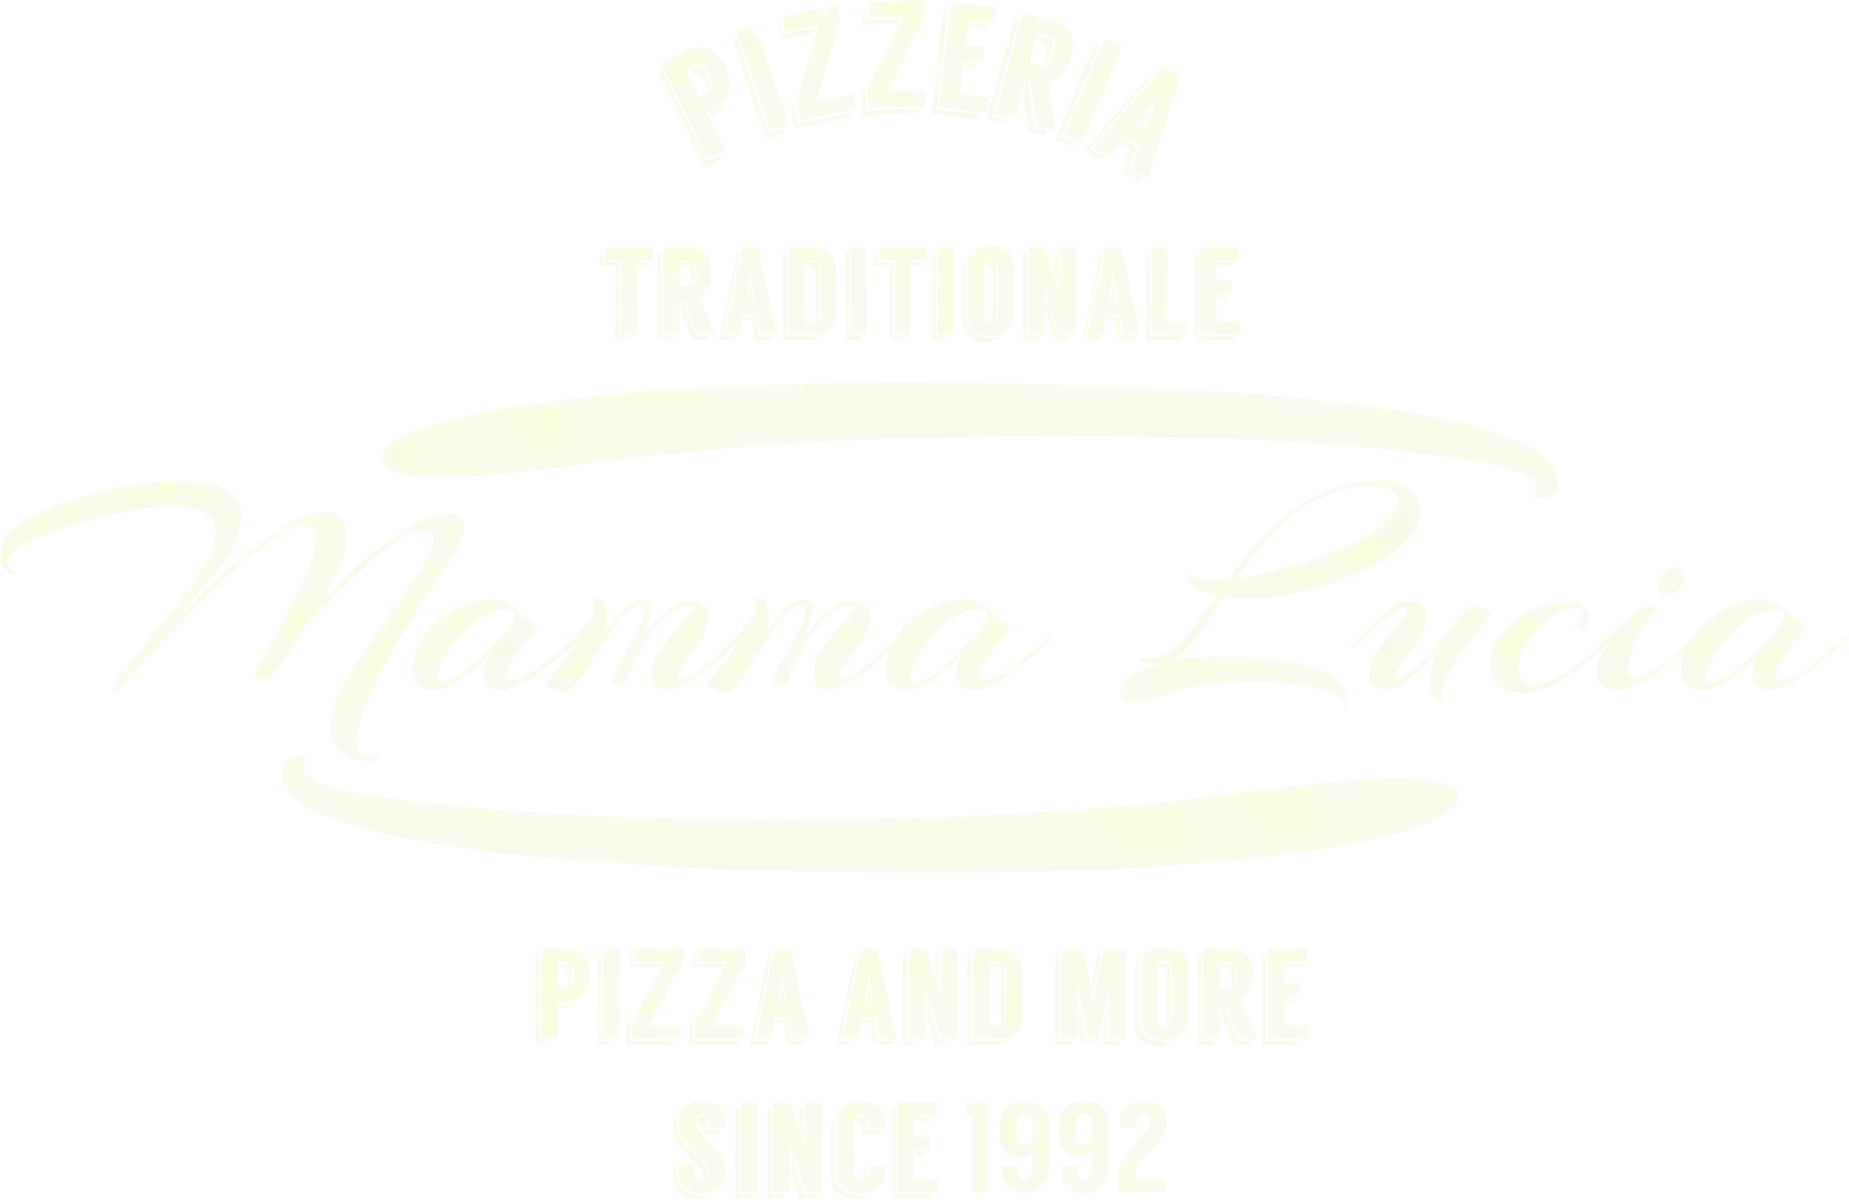 Pizzeria Mamma Lucia